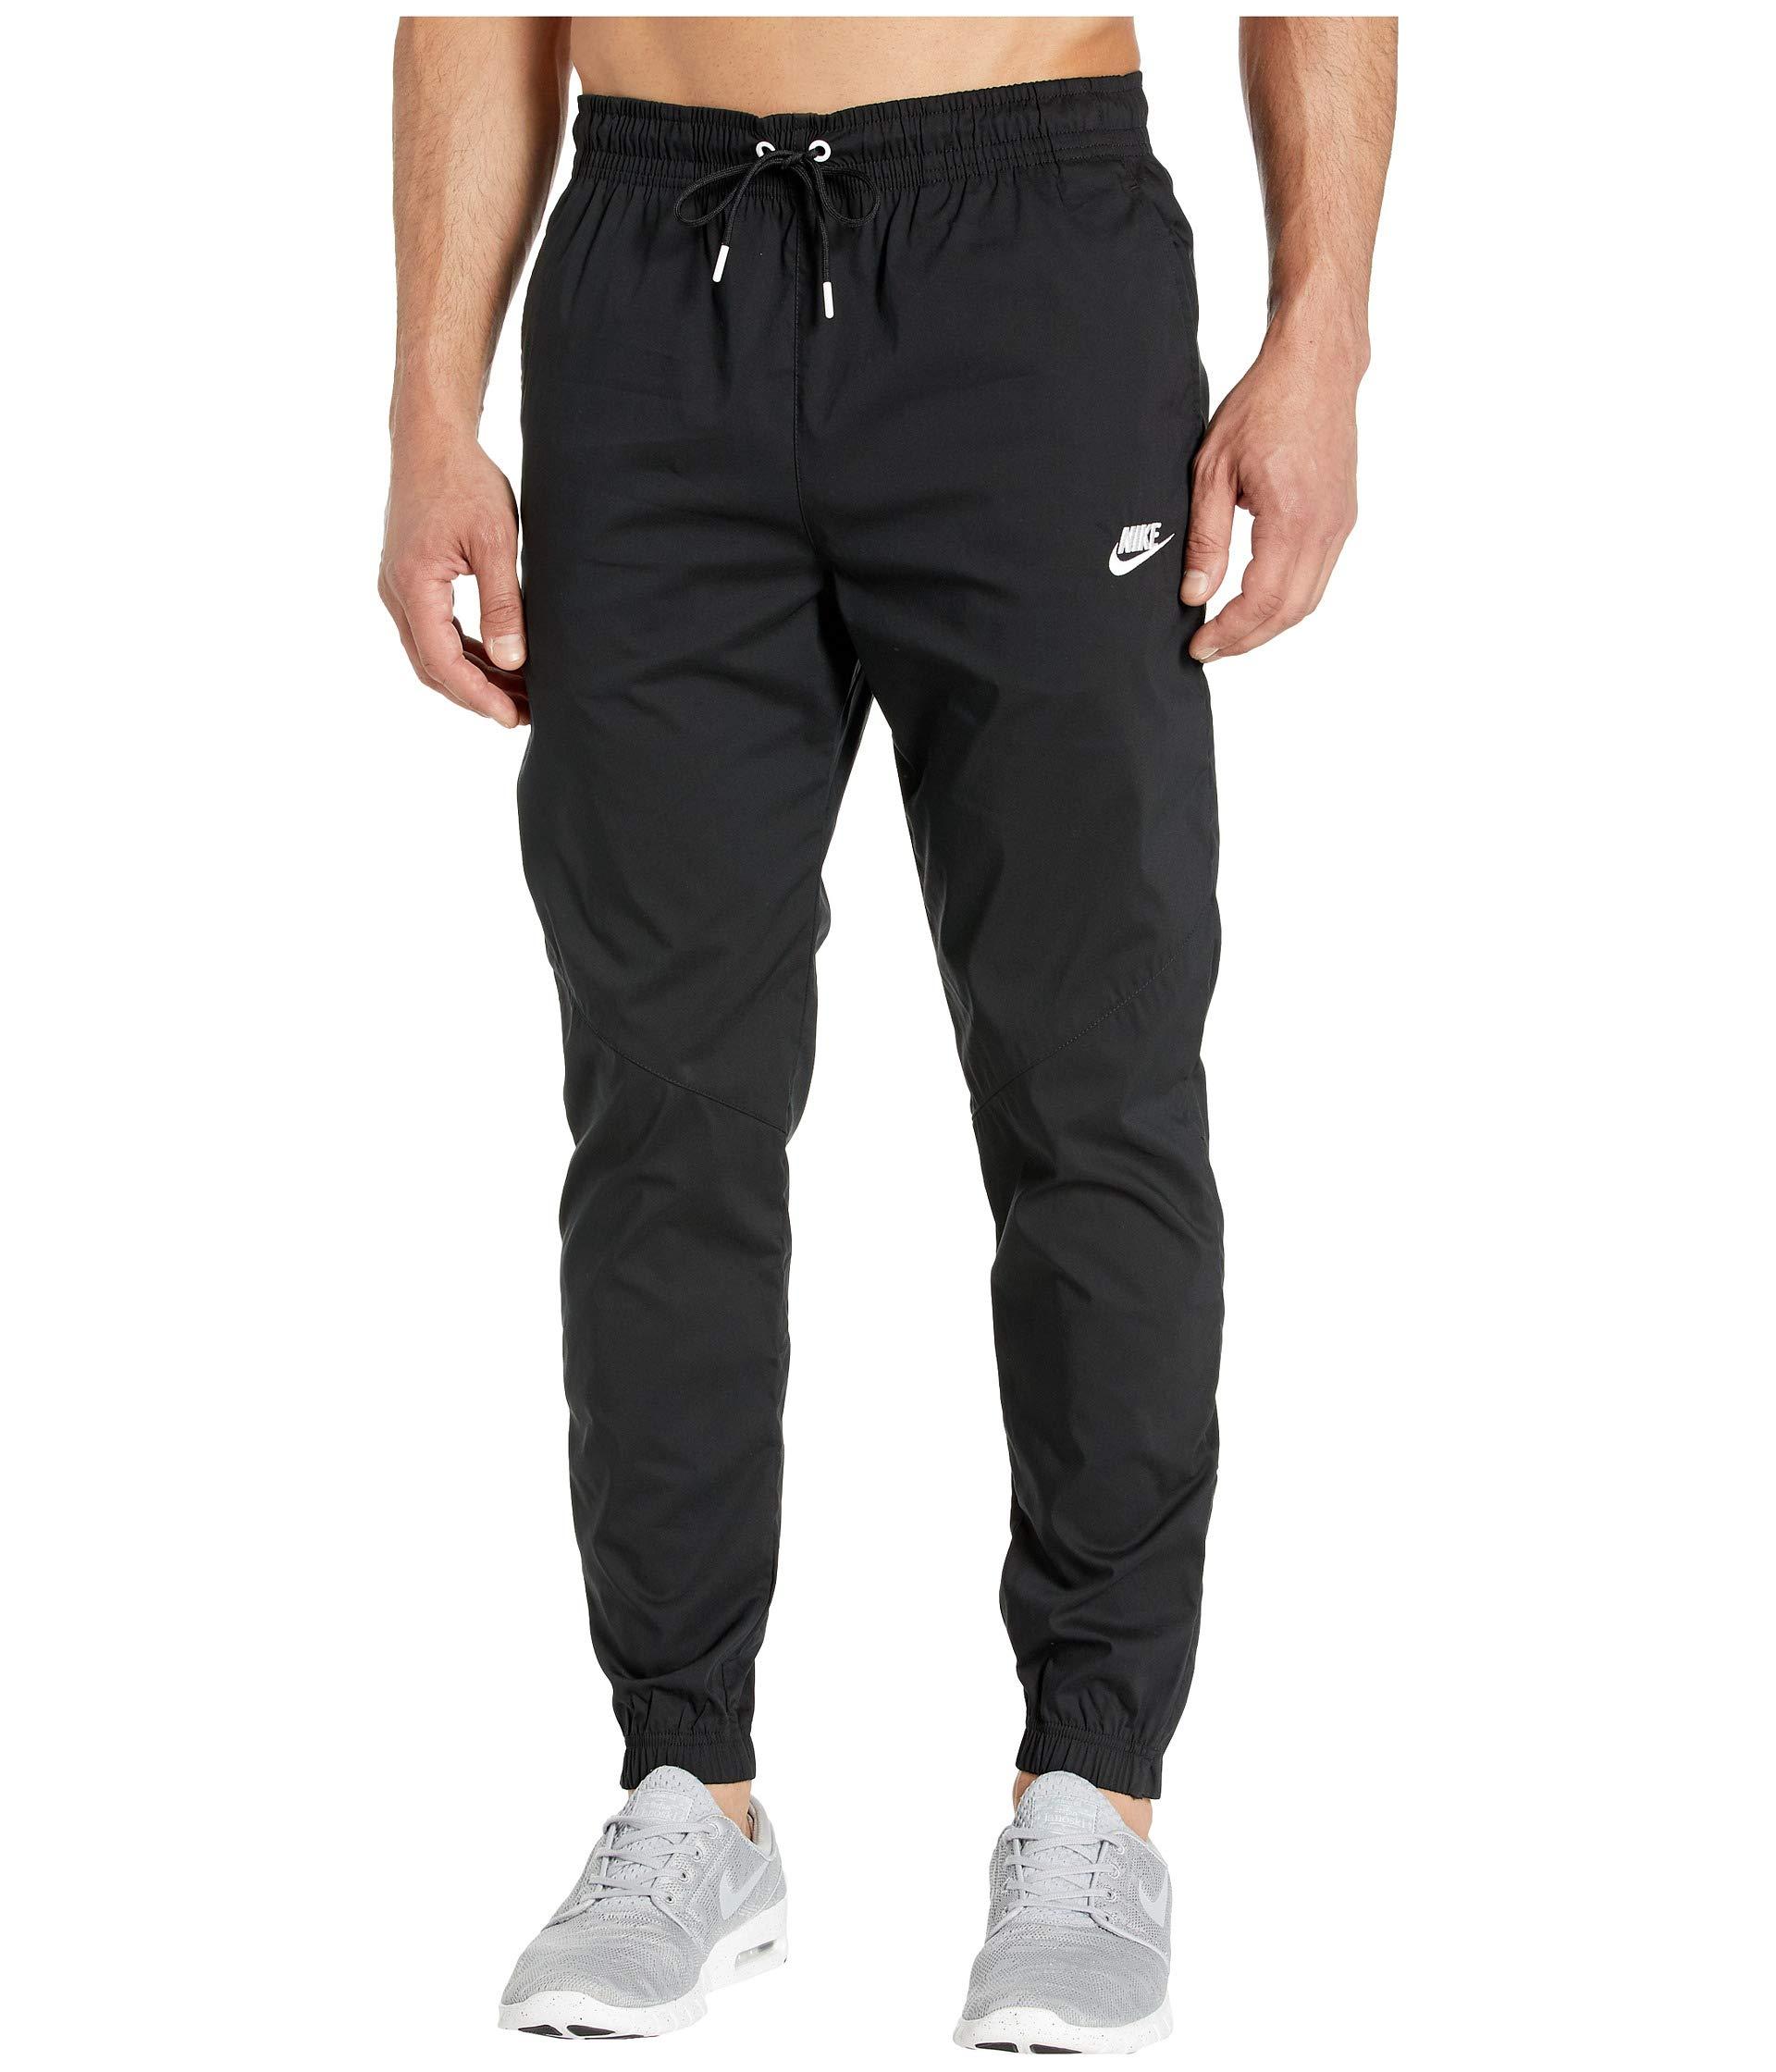 Nike Nsw Windrunner Street Pants in Black for Men - Lyst